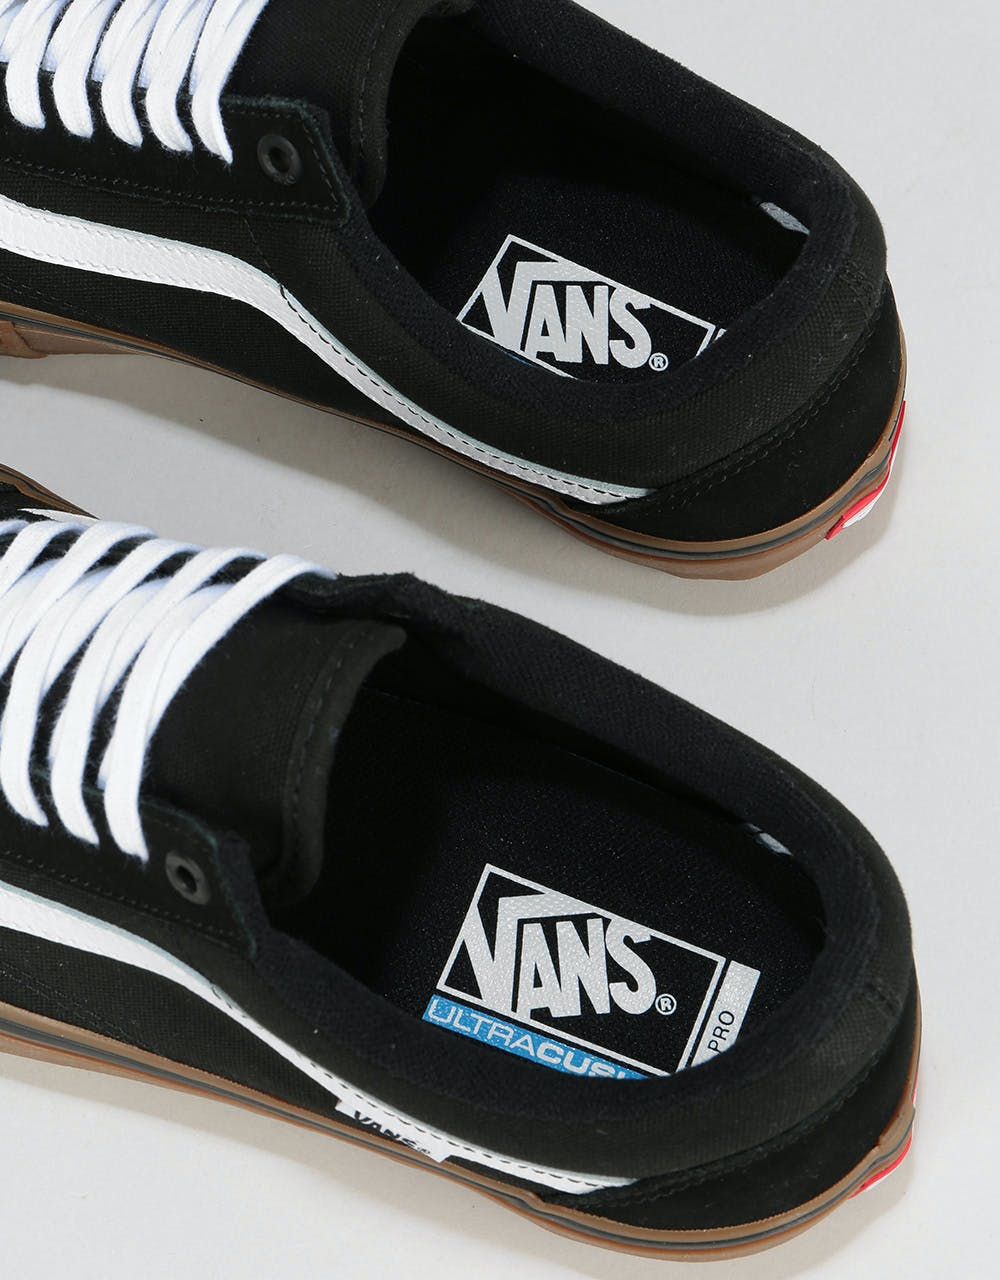 Vans Old Skool Pro Skate Shoes - Black/White/Medium Gum